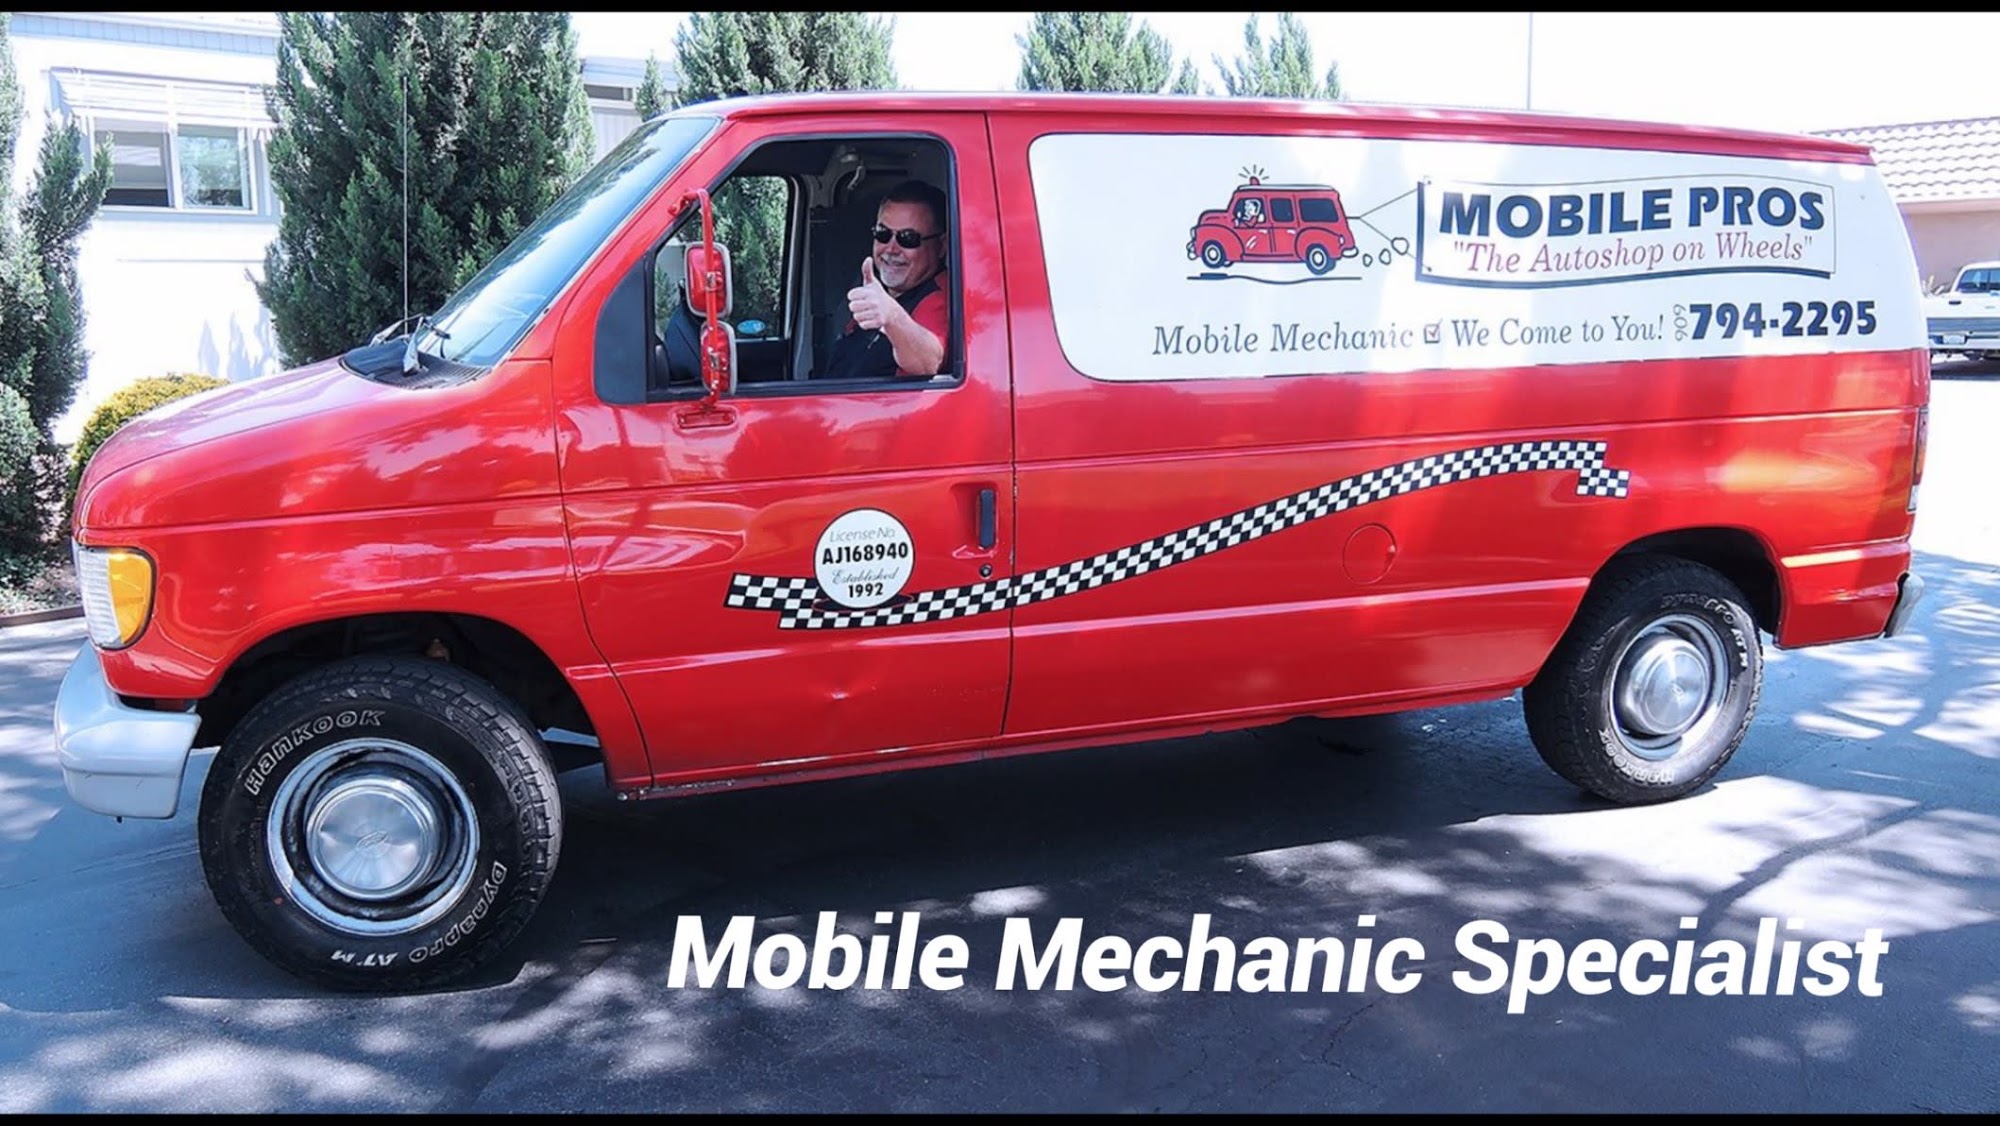 Mobile Pros-Mobile Auto Repair